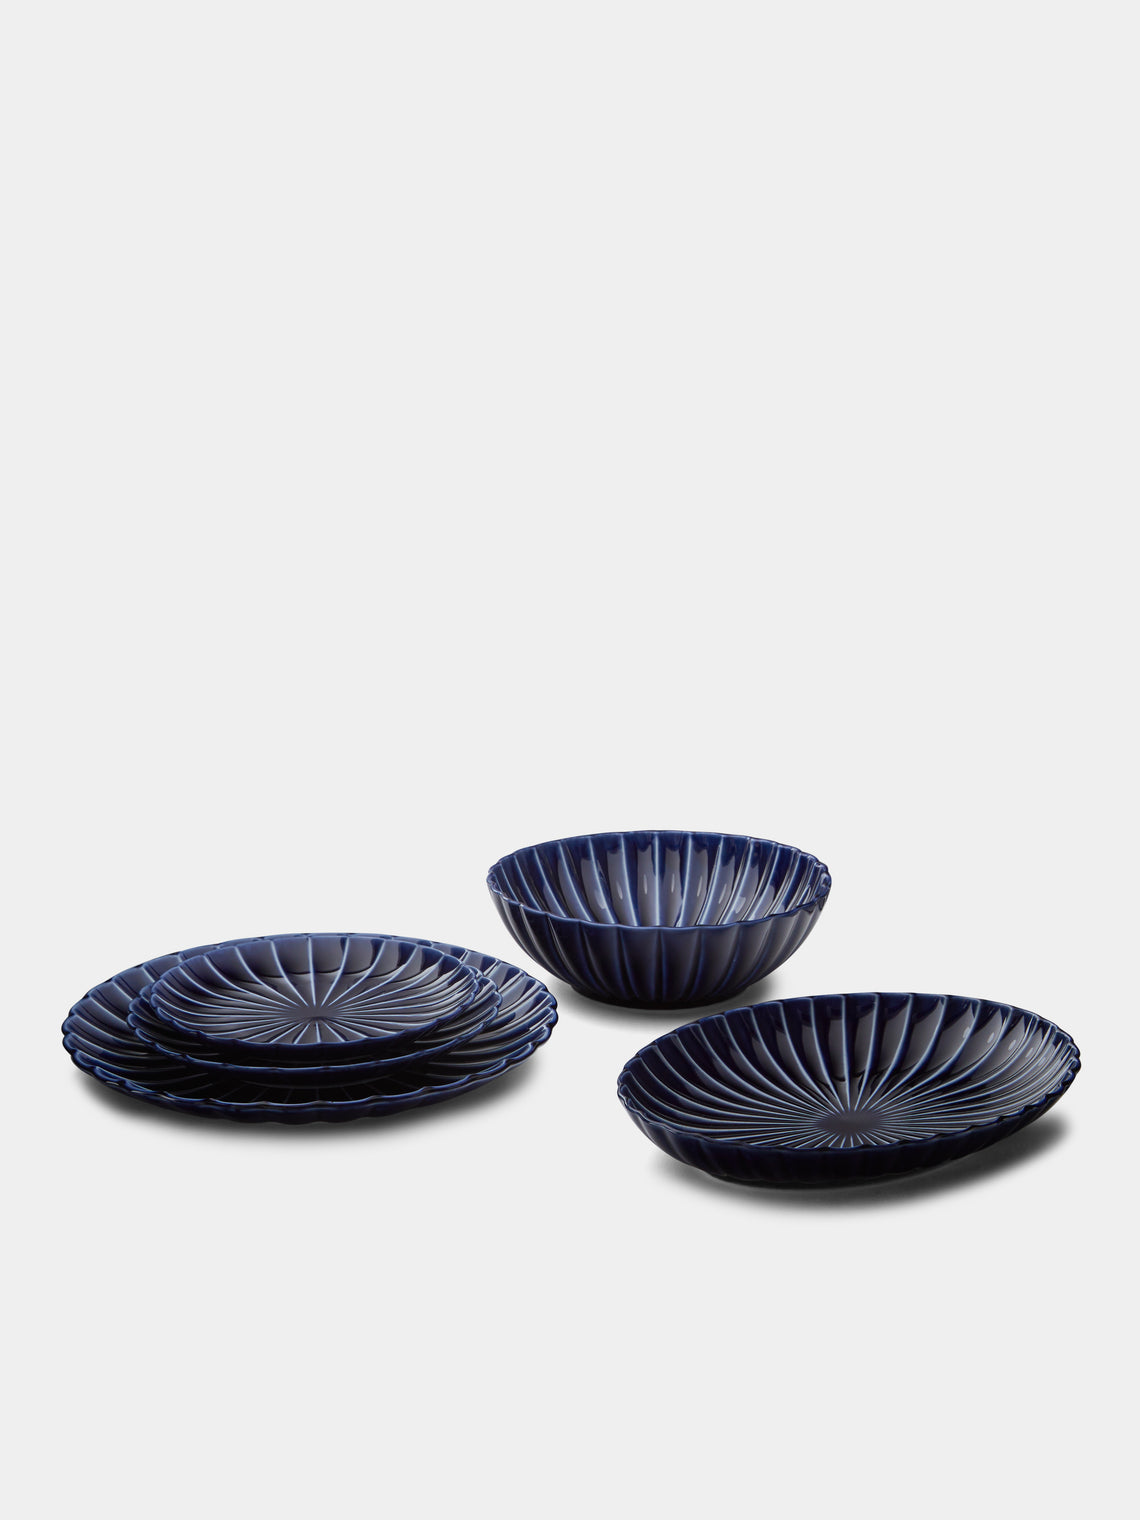 Kaneko Kohyo - Giyaman Urushi Ceramic Dessert Plates (Set of 4) - Blue - ABASK